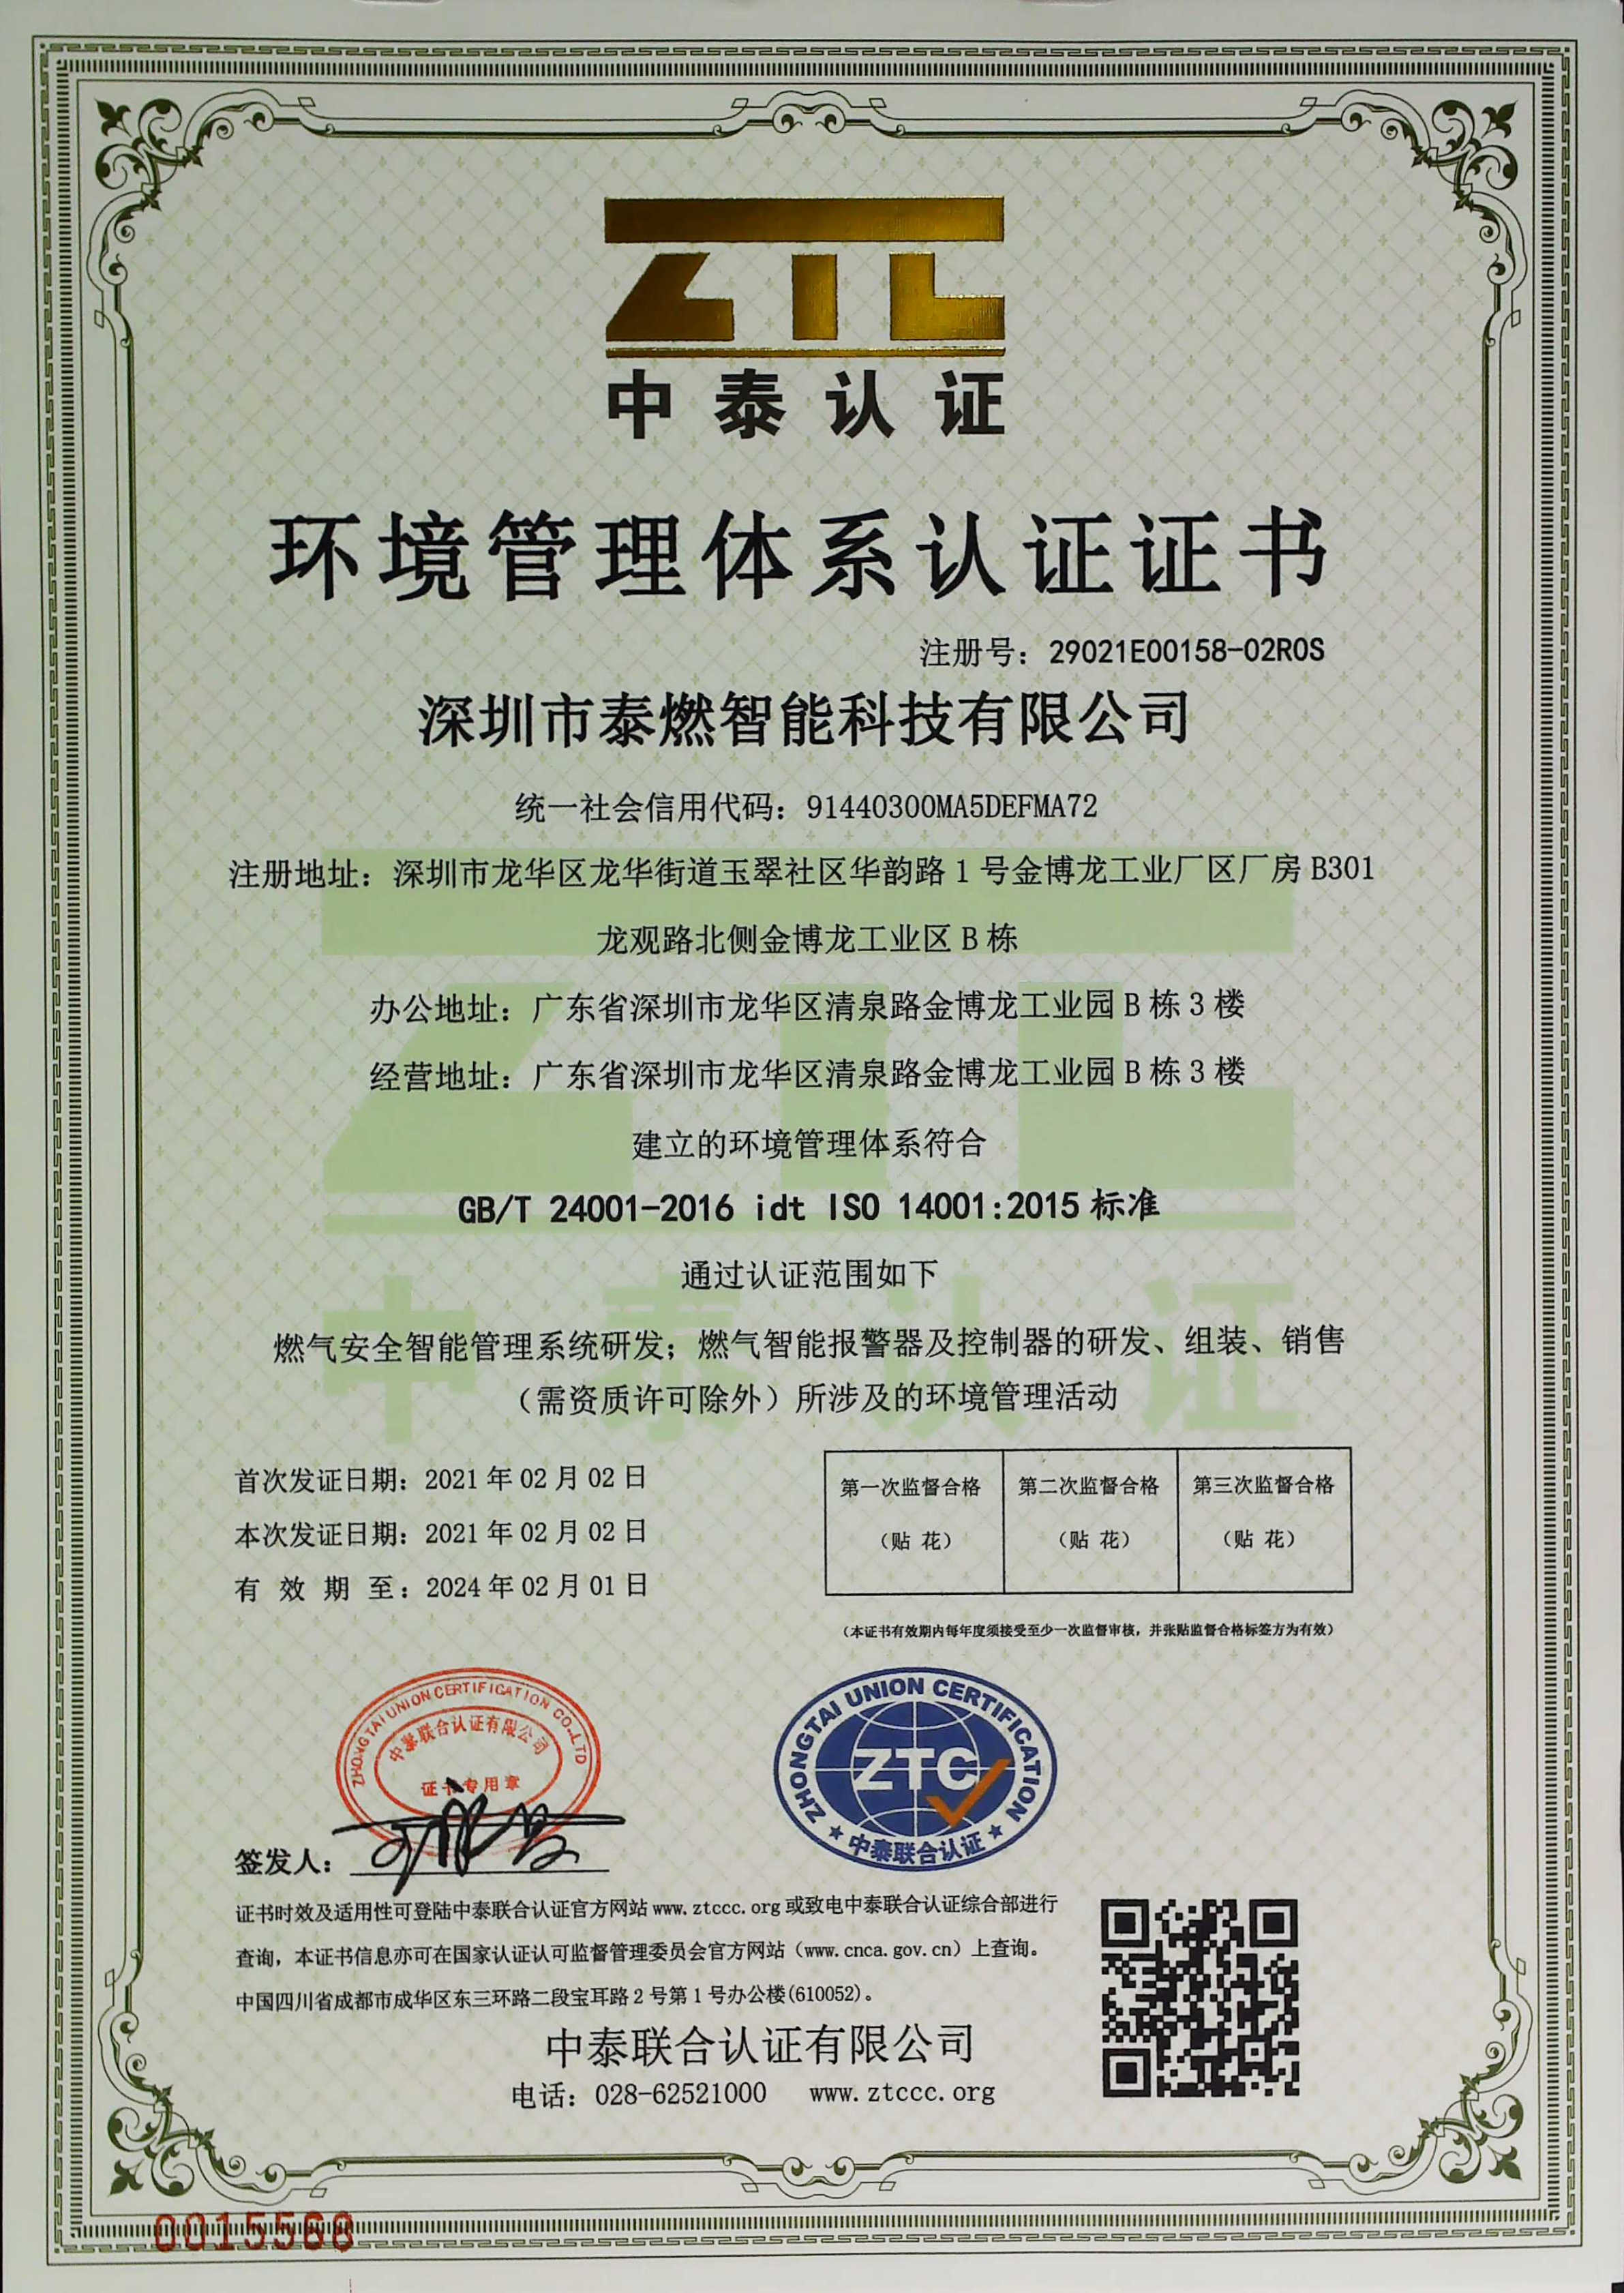 喜讯 | 祝贺泰燃智能顺利通过ISO14001环境体系认证